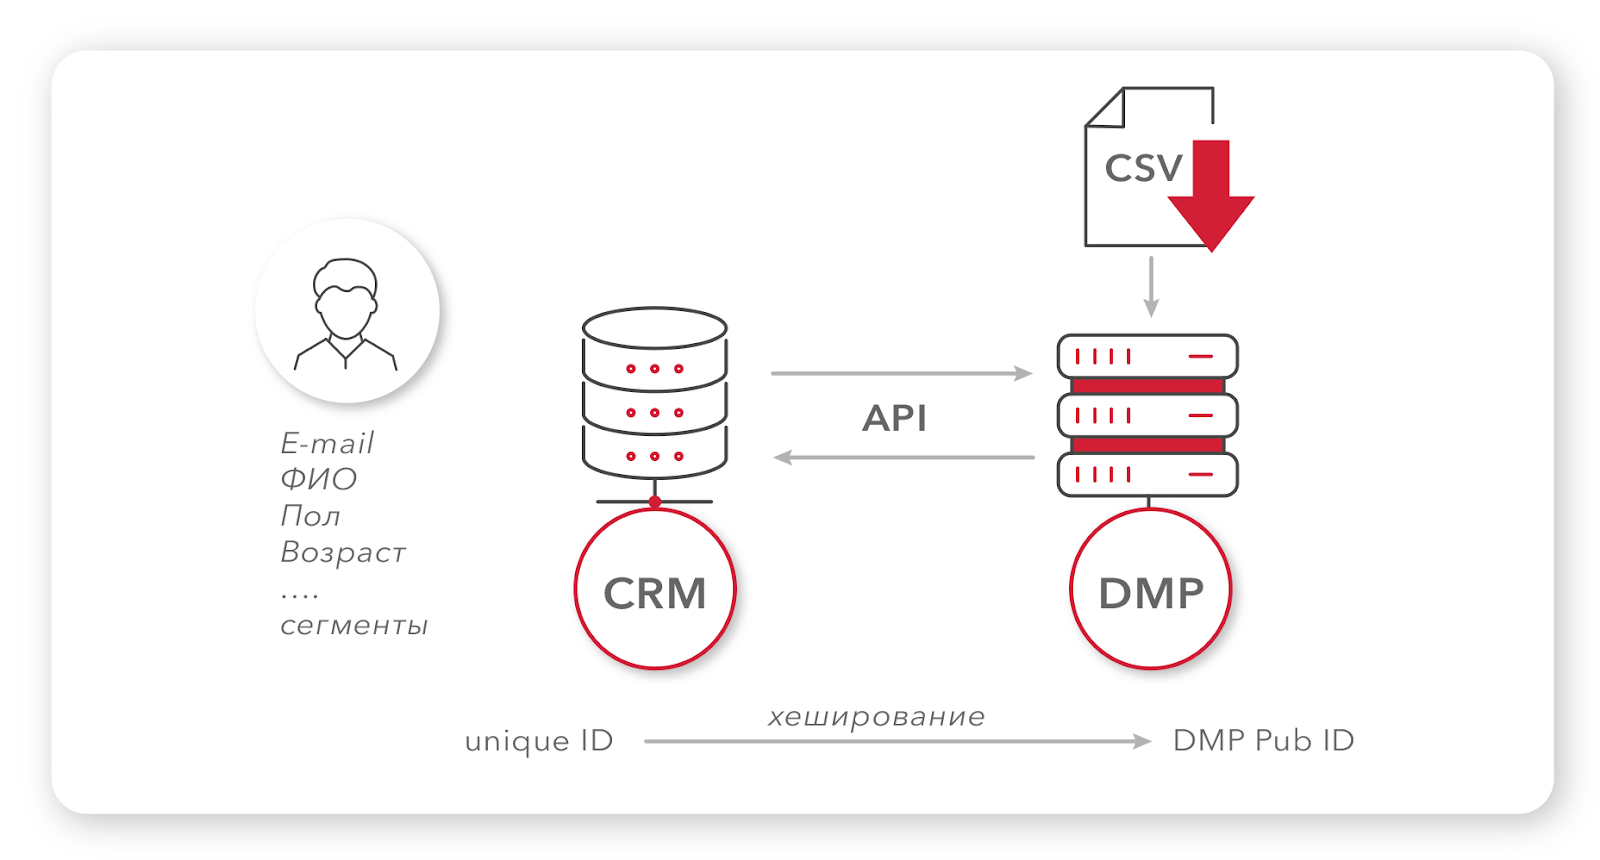 Как сайтам заработать с помощью DMP: загрузка данных в DMP 